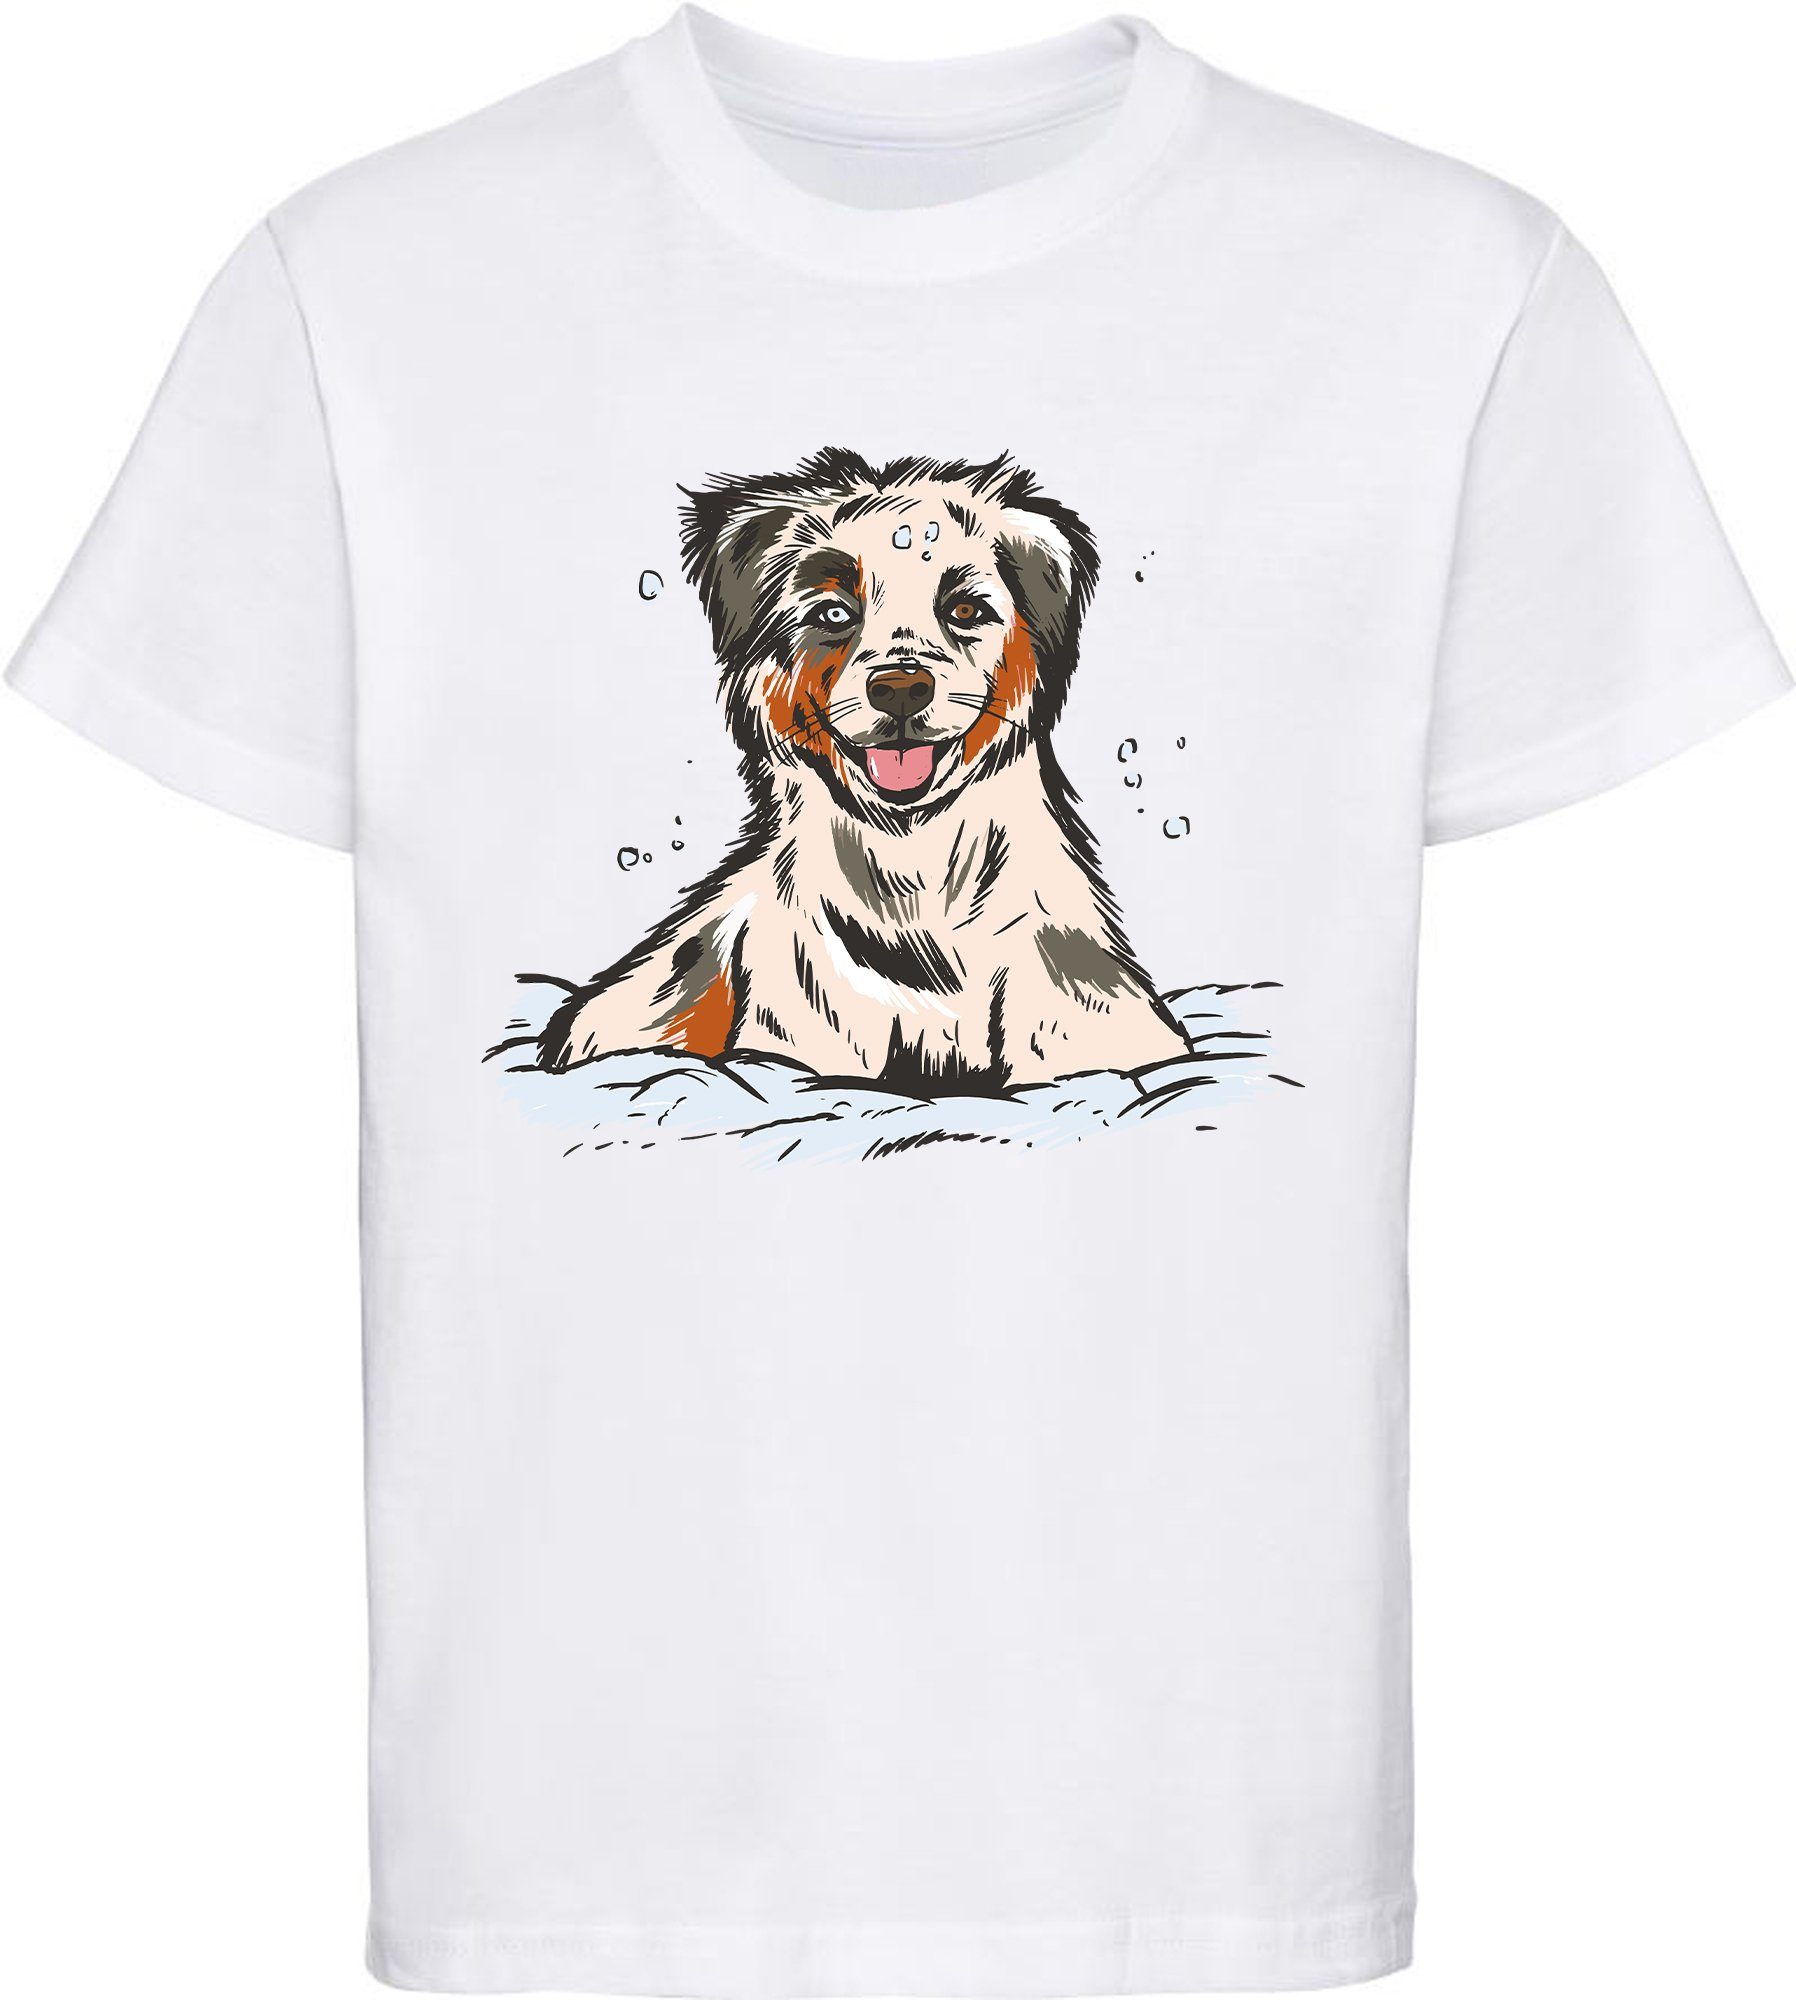 MyDesign24 Print-Shirt bedrucktes Kinder und Jugend Hunde T-Shirt Australian Shepherd Welpe Baumwollshirt mit Aufdruck, i216 weiss